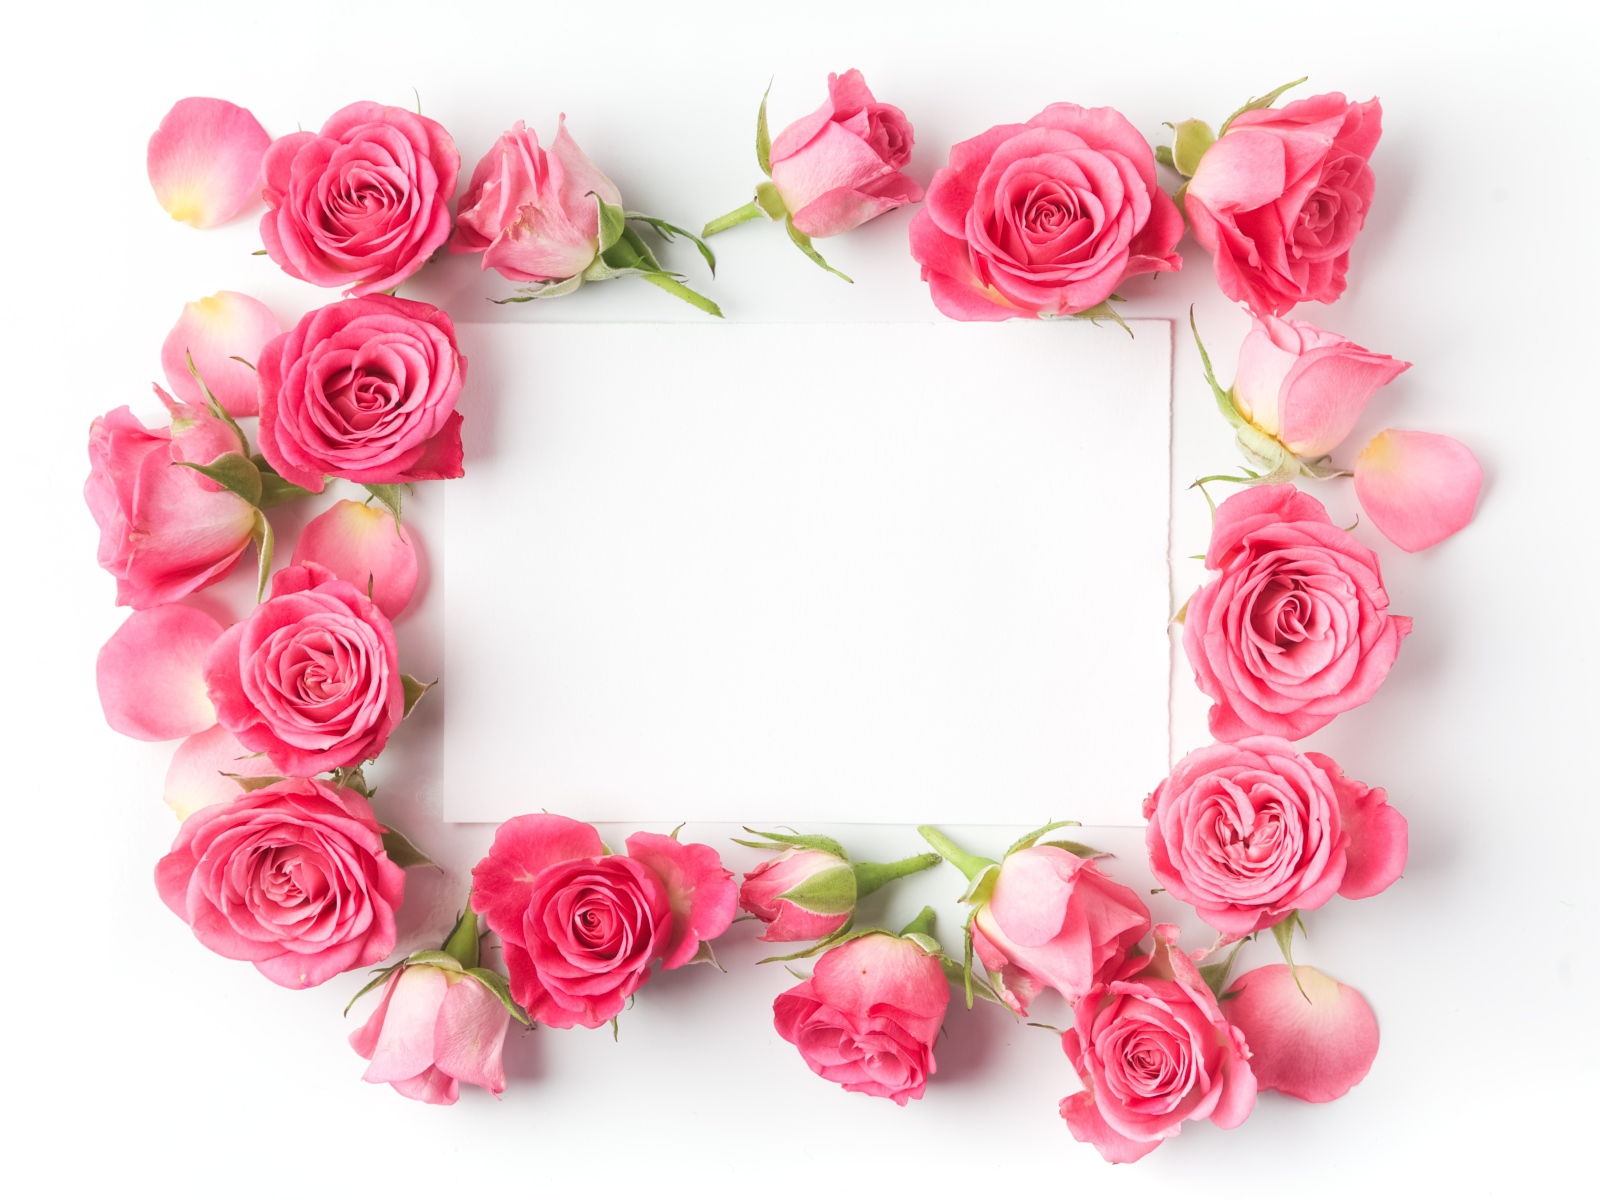 Бутоны розовых роз вокруг белого листа, шаблон для открытки